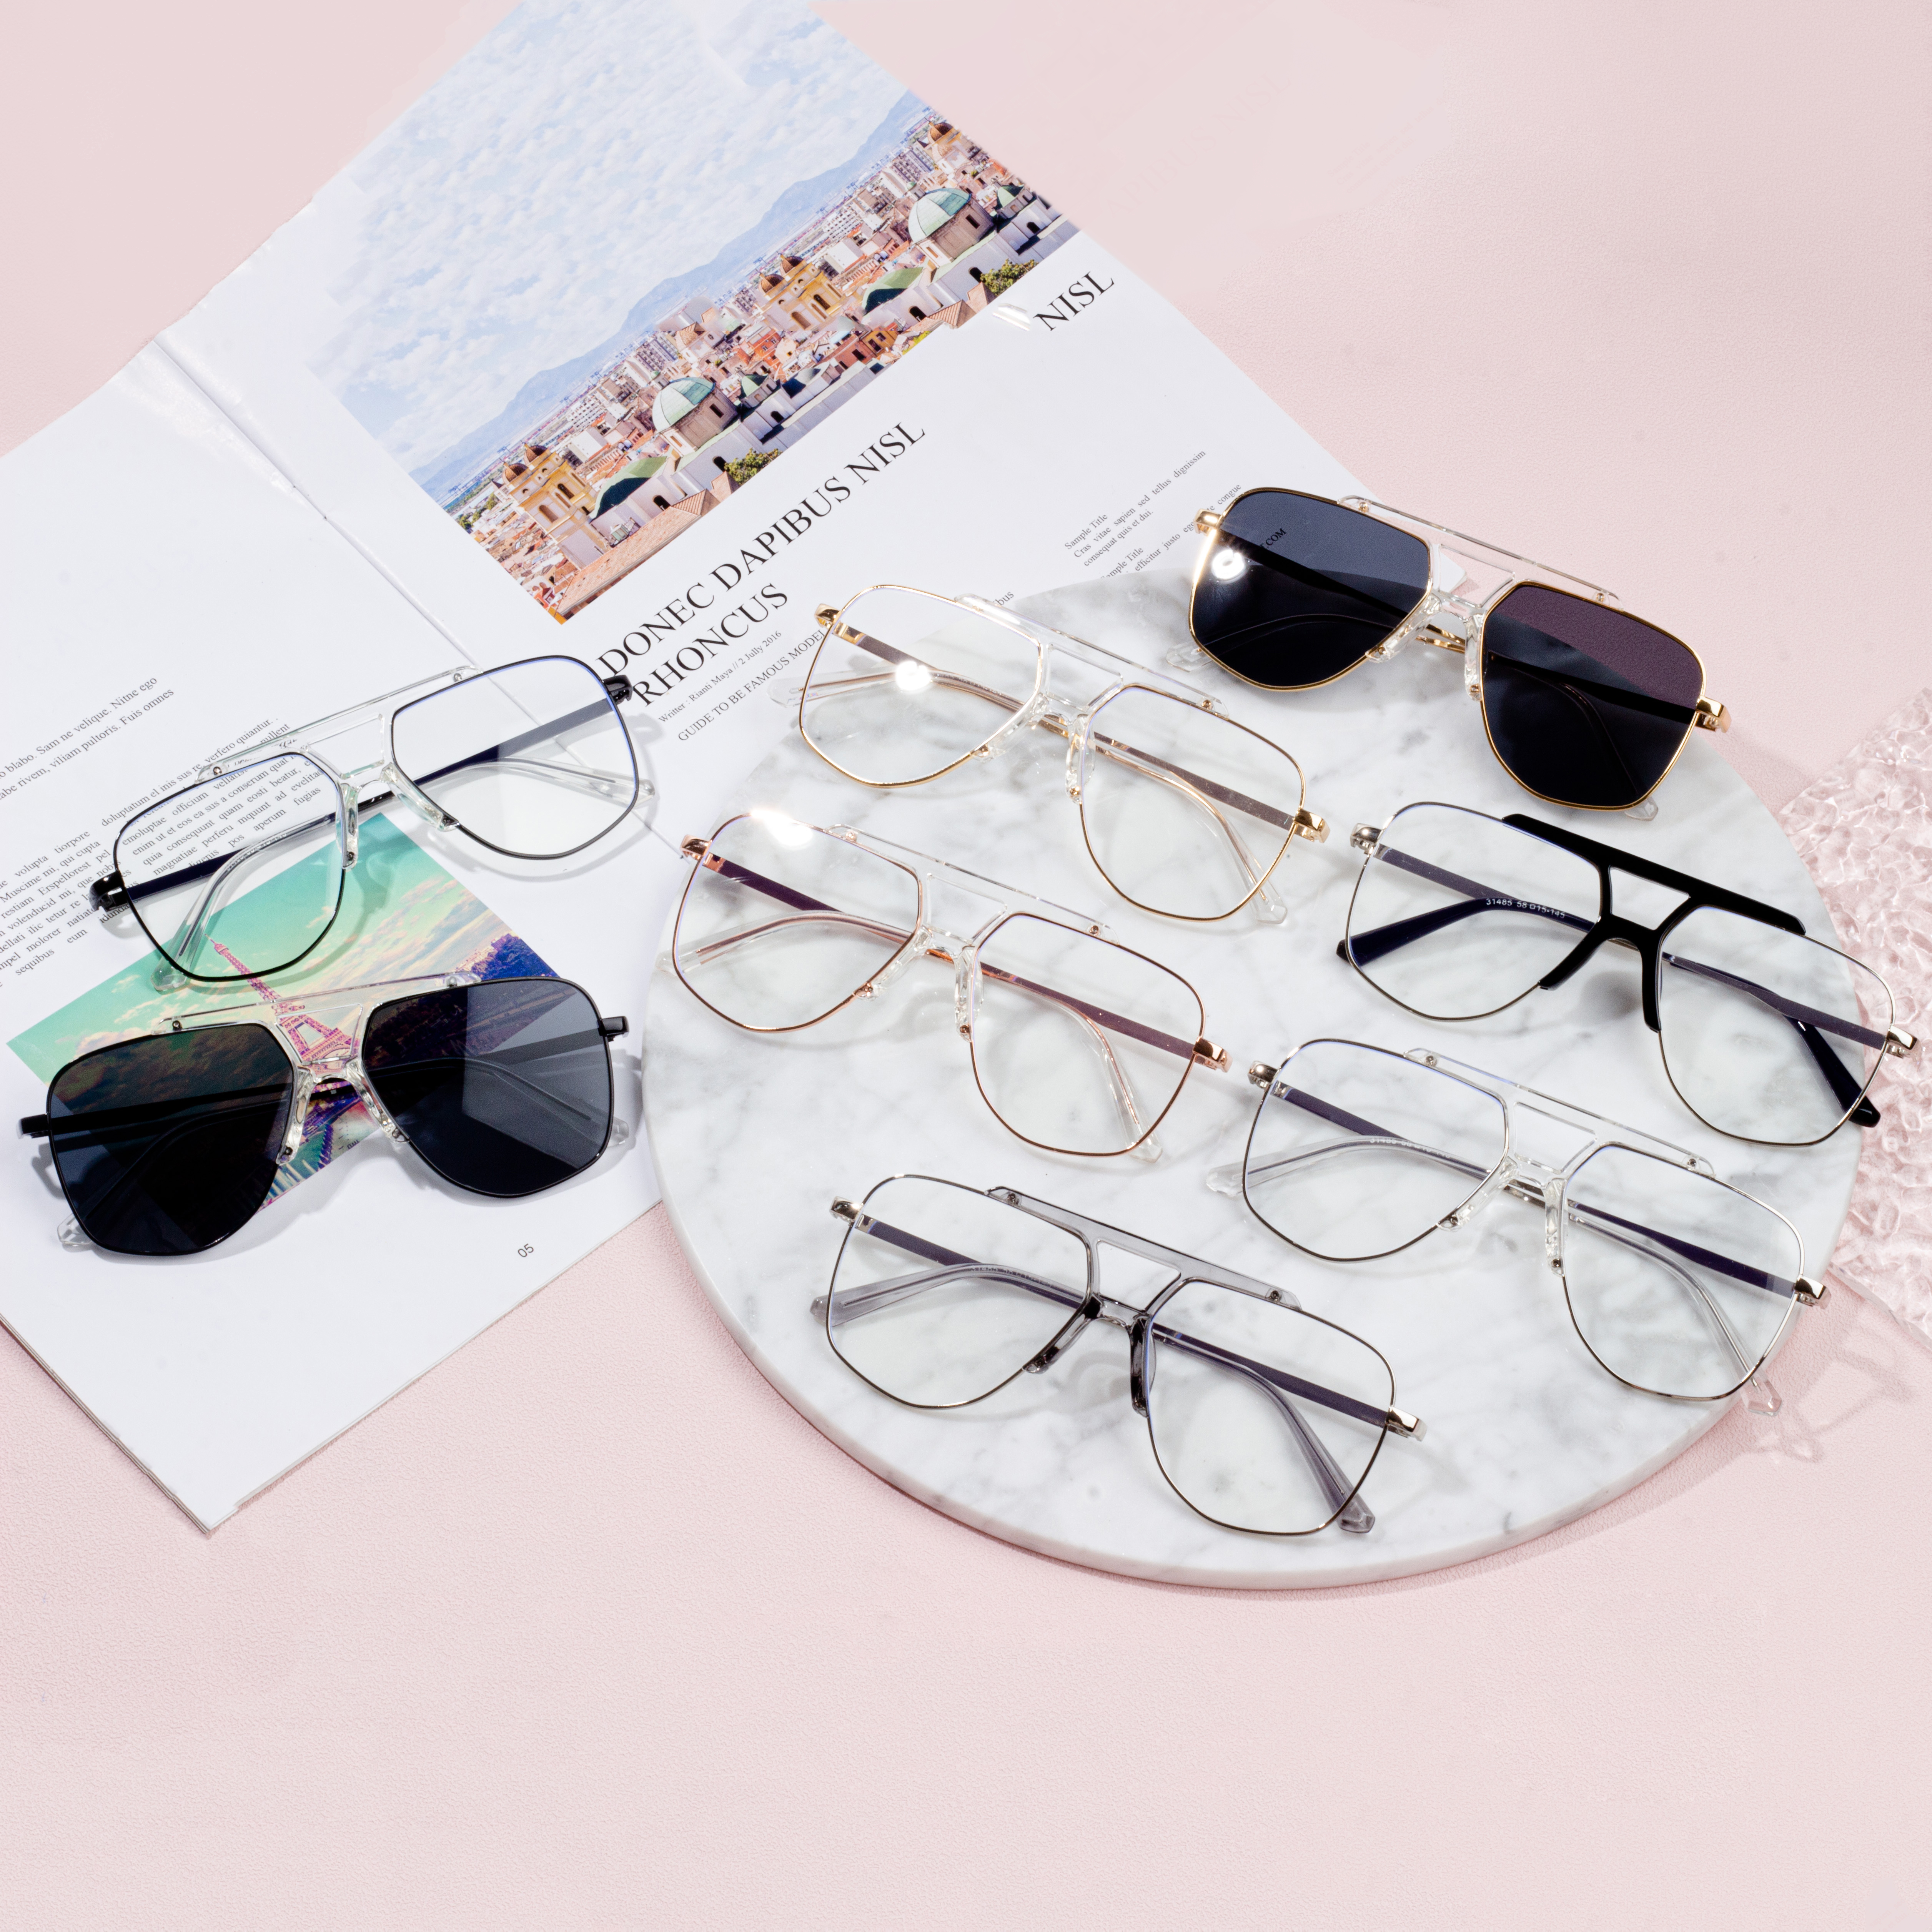 unusual eyeglass frames